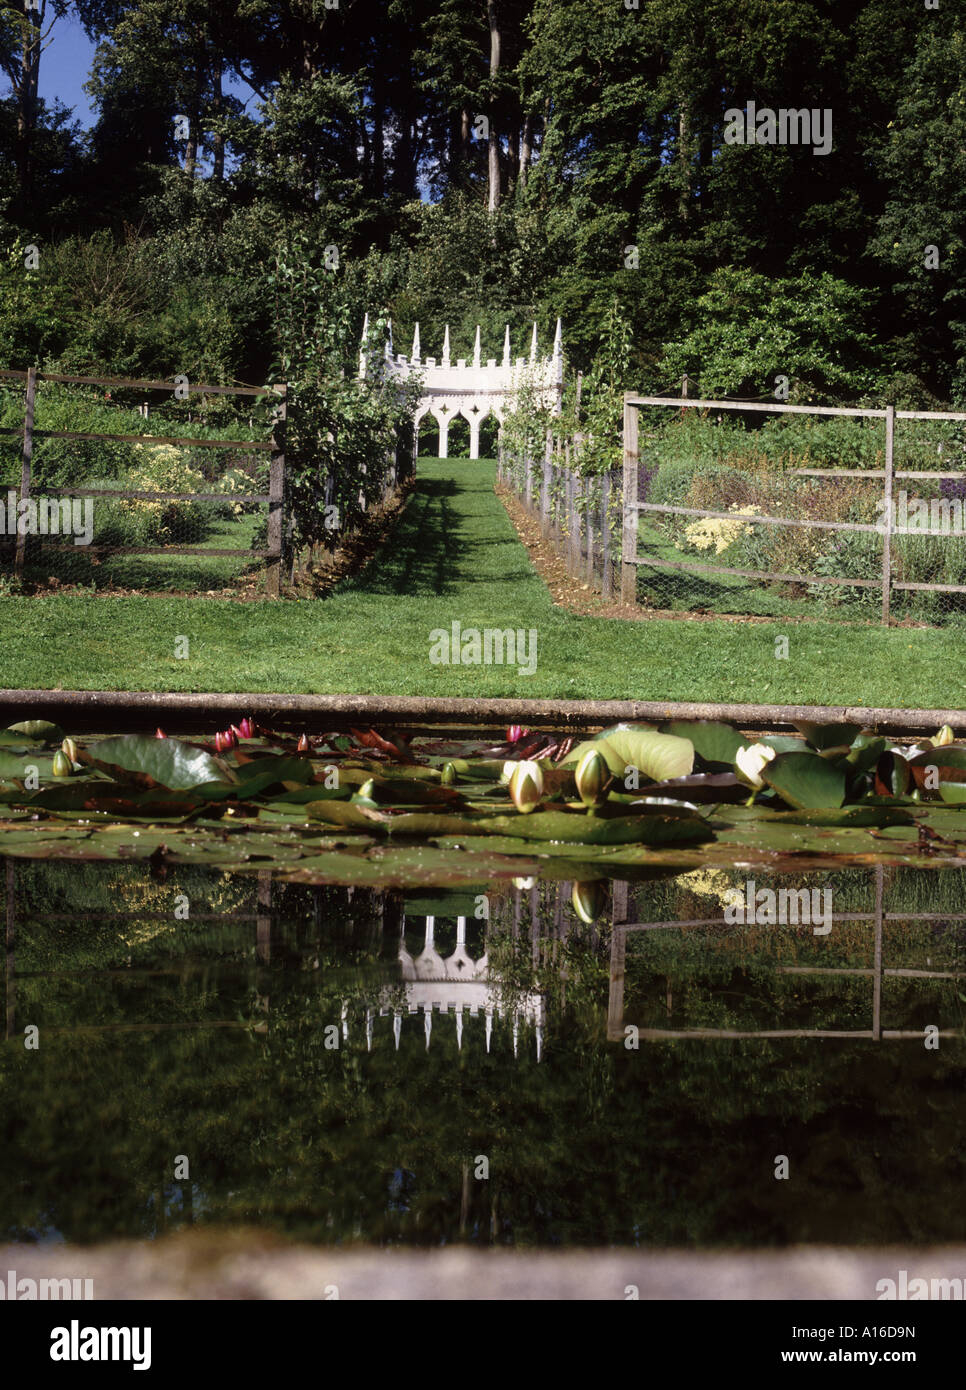 Les pittoresques jardins Rococo à Painswick dans les Cotswolds restauré à l'ancienne gloire du 18e cen par Lord Dickinson Banque D'Images